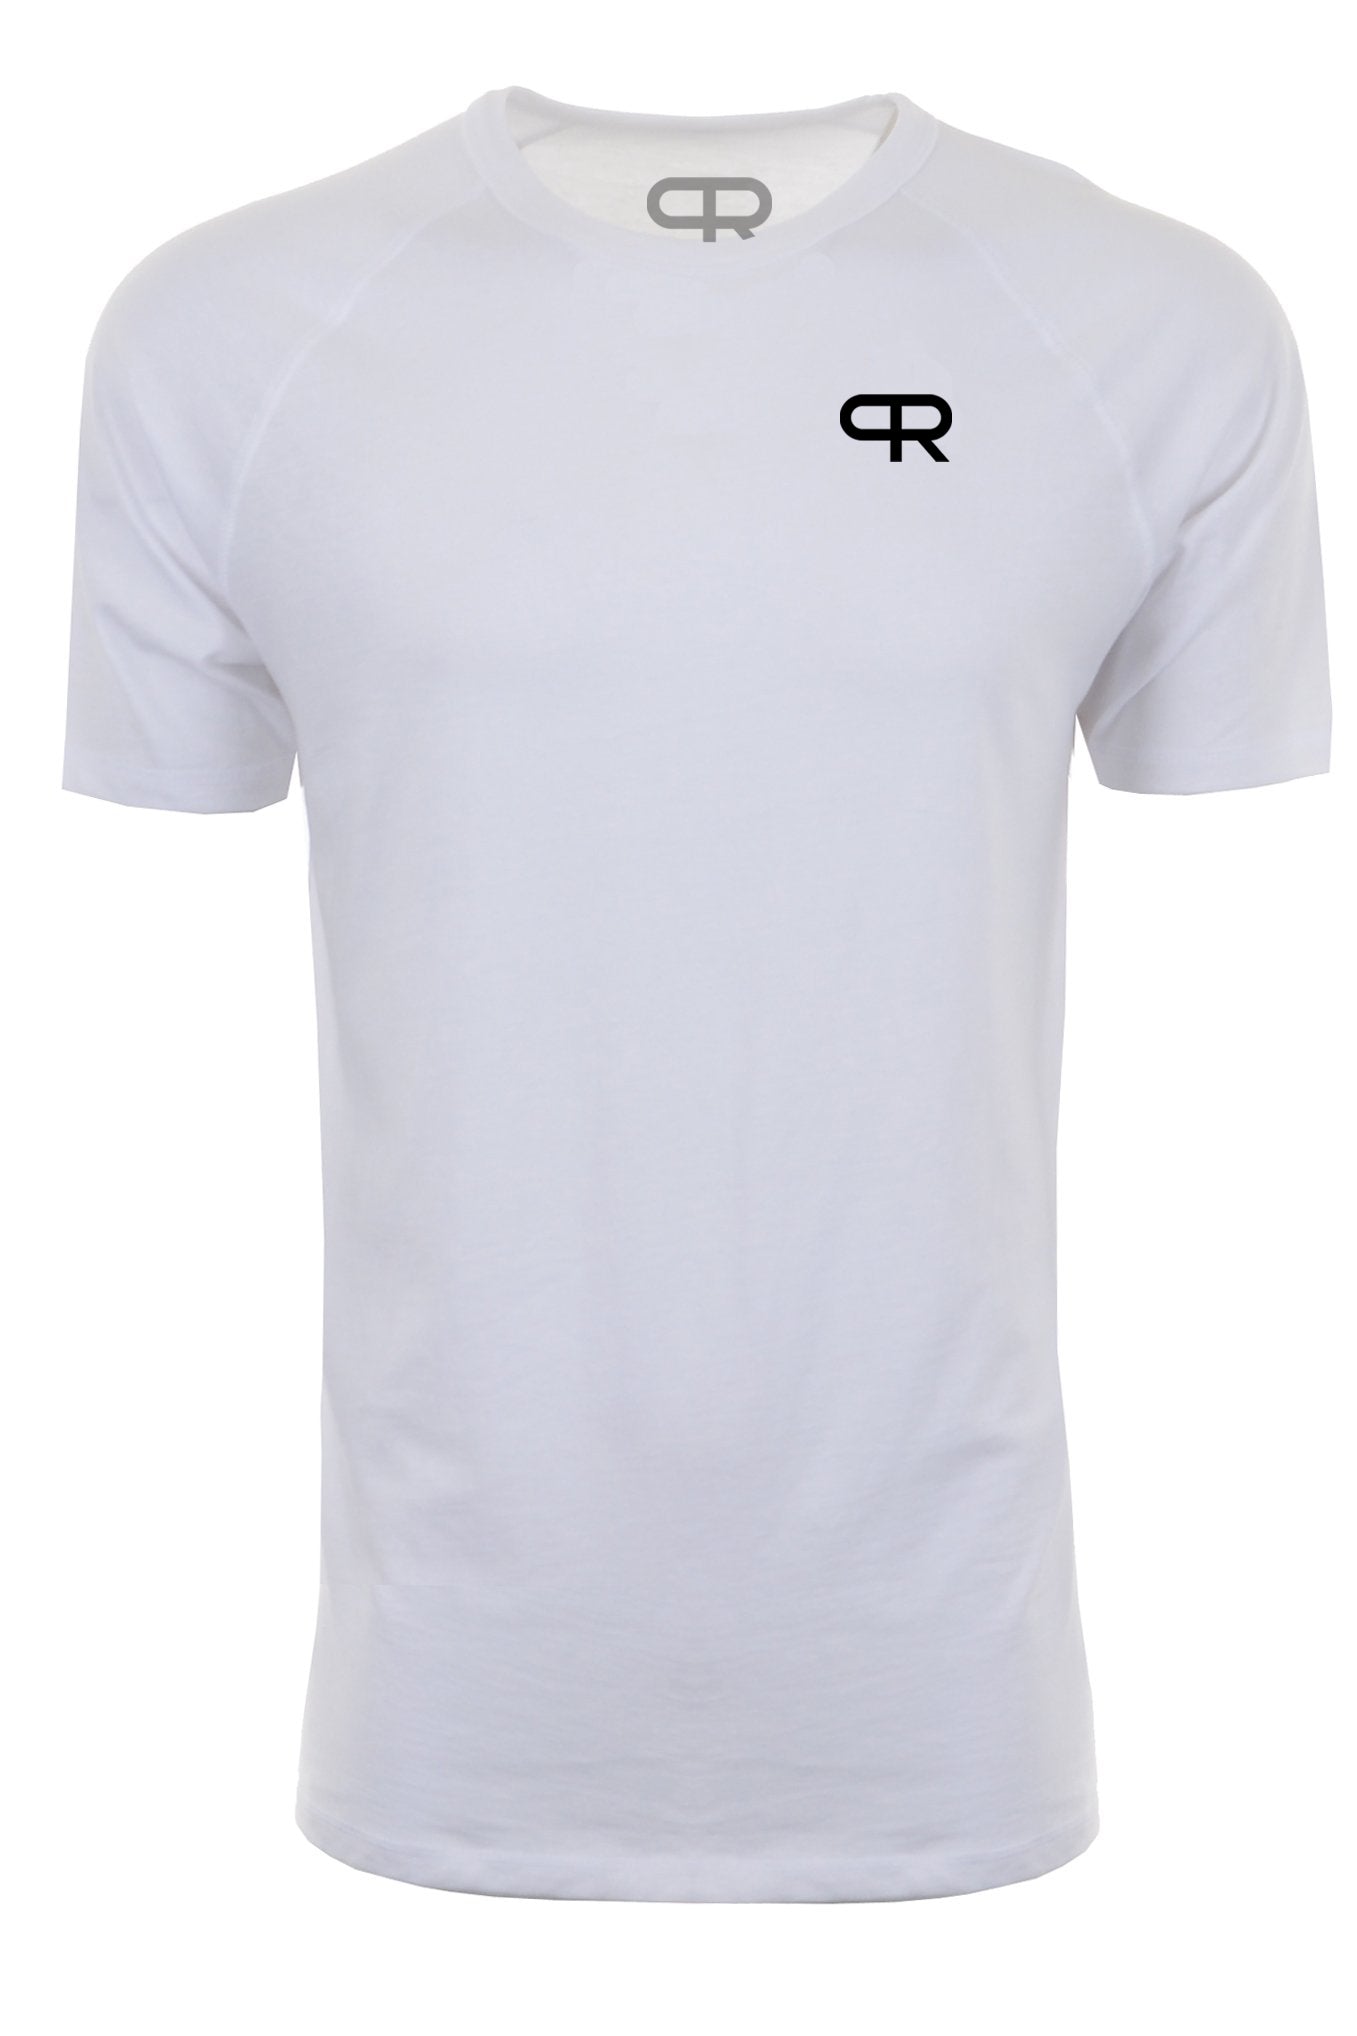 PR Raglan Tech Shirts - PR402 - White